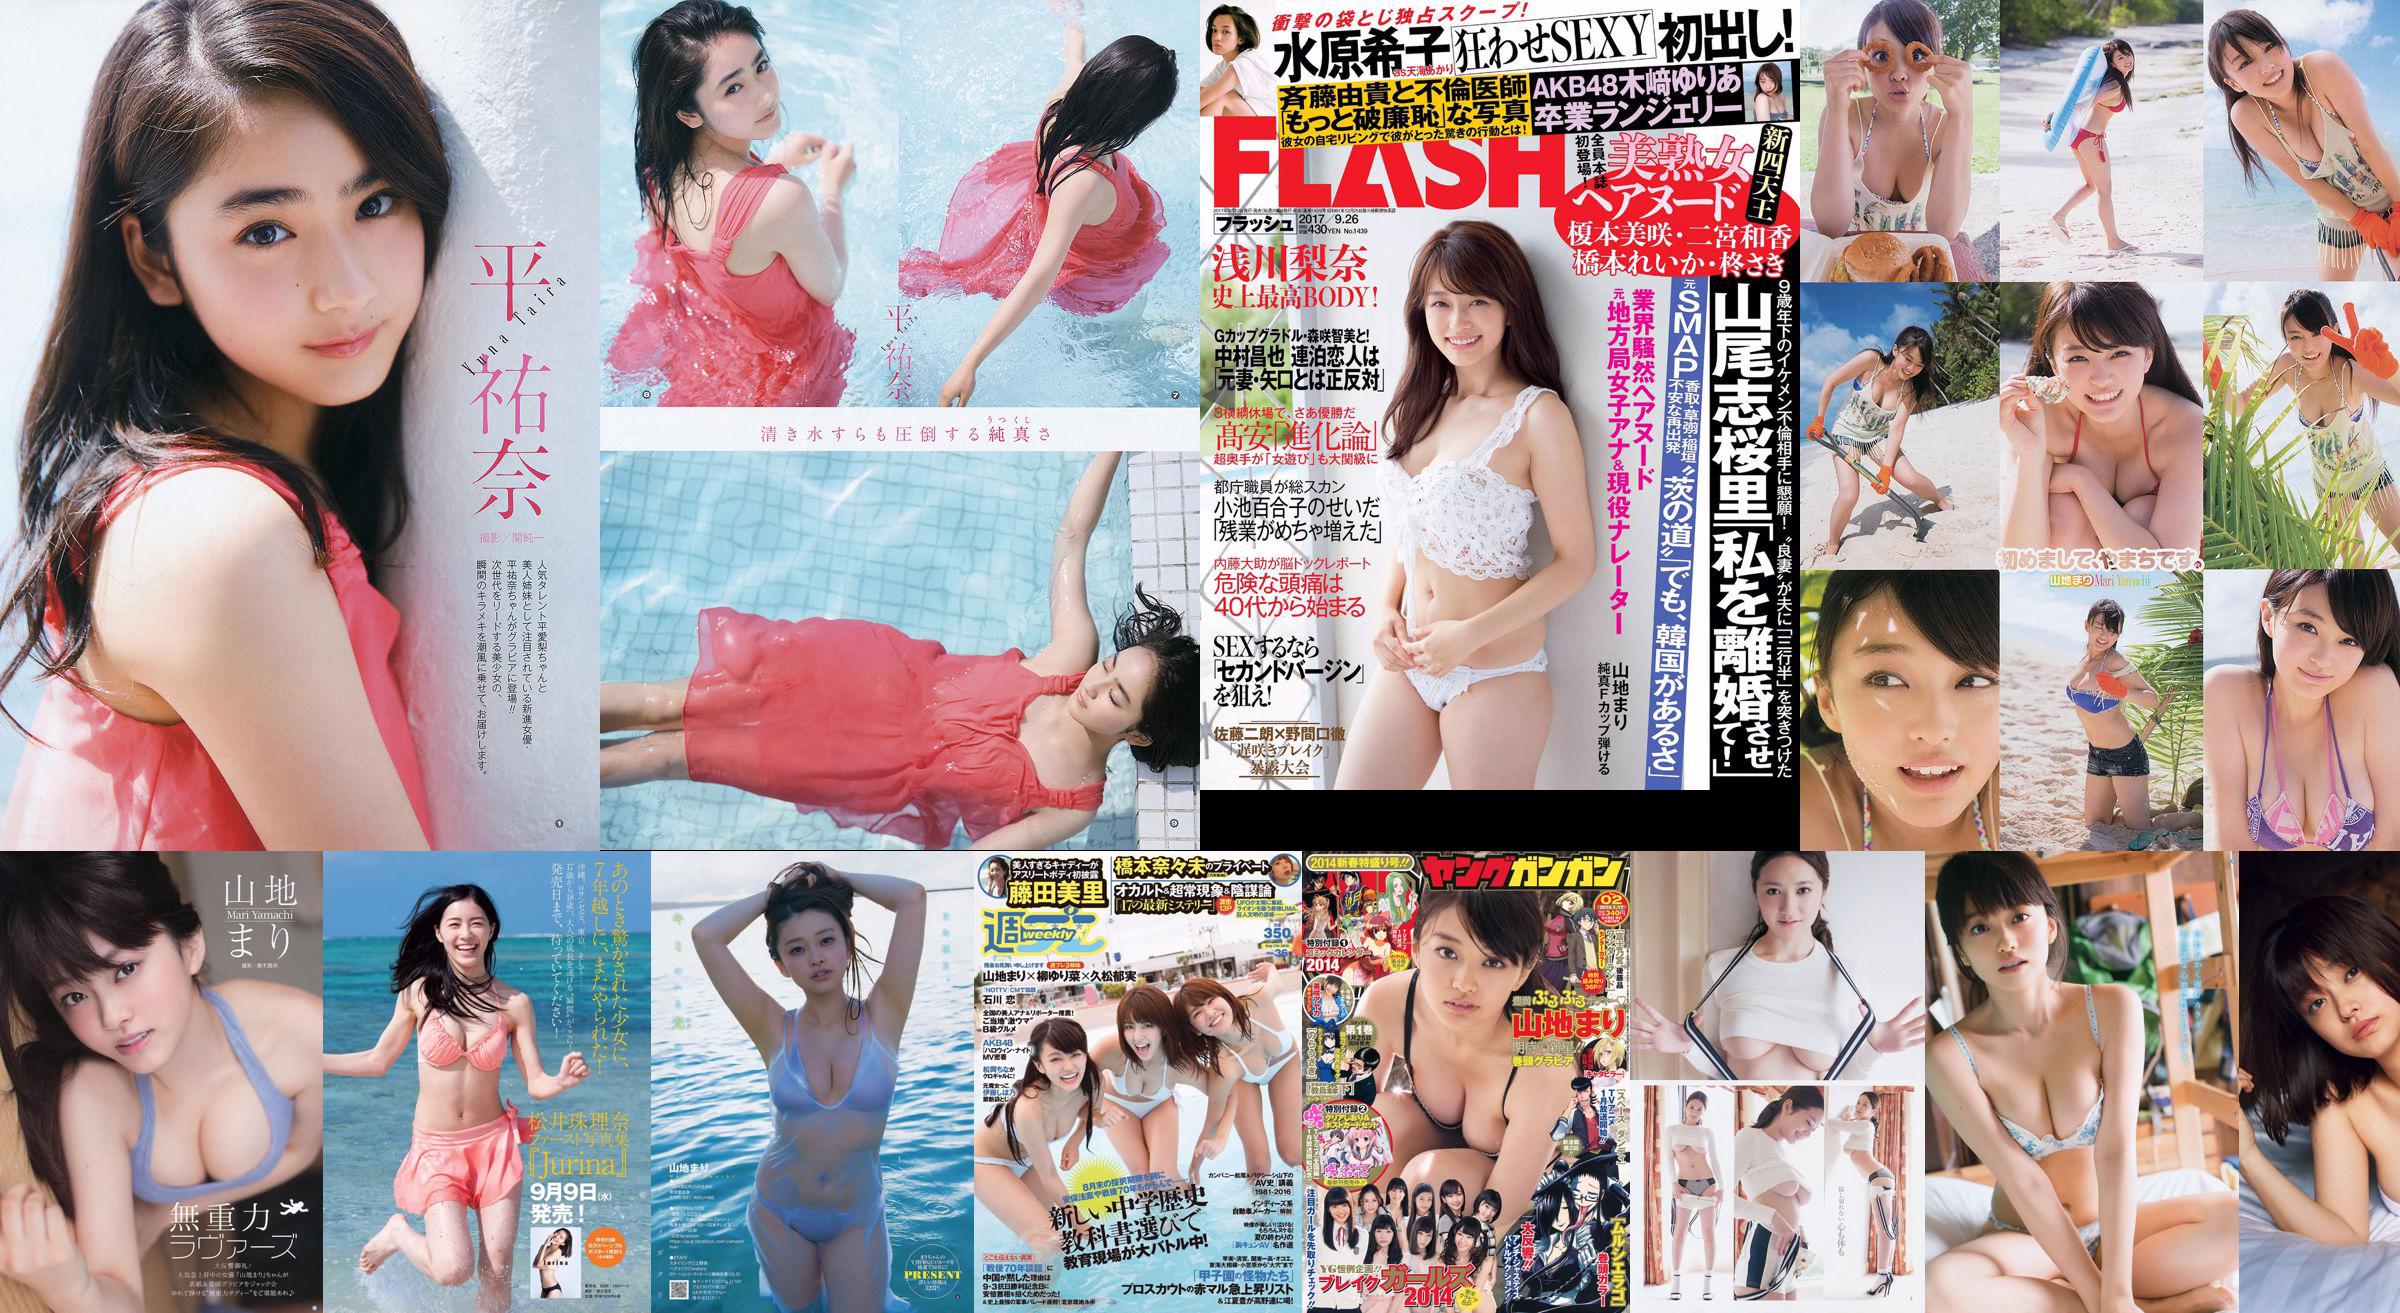 Berg Mari Matsumoto Erika Tang Tian Erika Shionji Misumi Takahashi Walnoot Watanabe Miyuki [Weekly Playboy] 2016 No.30 Photo Magazine No.373c97 Pagina 3